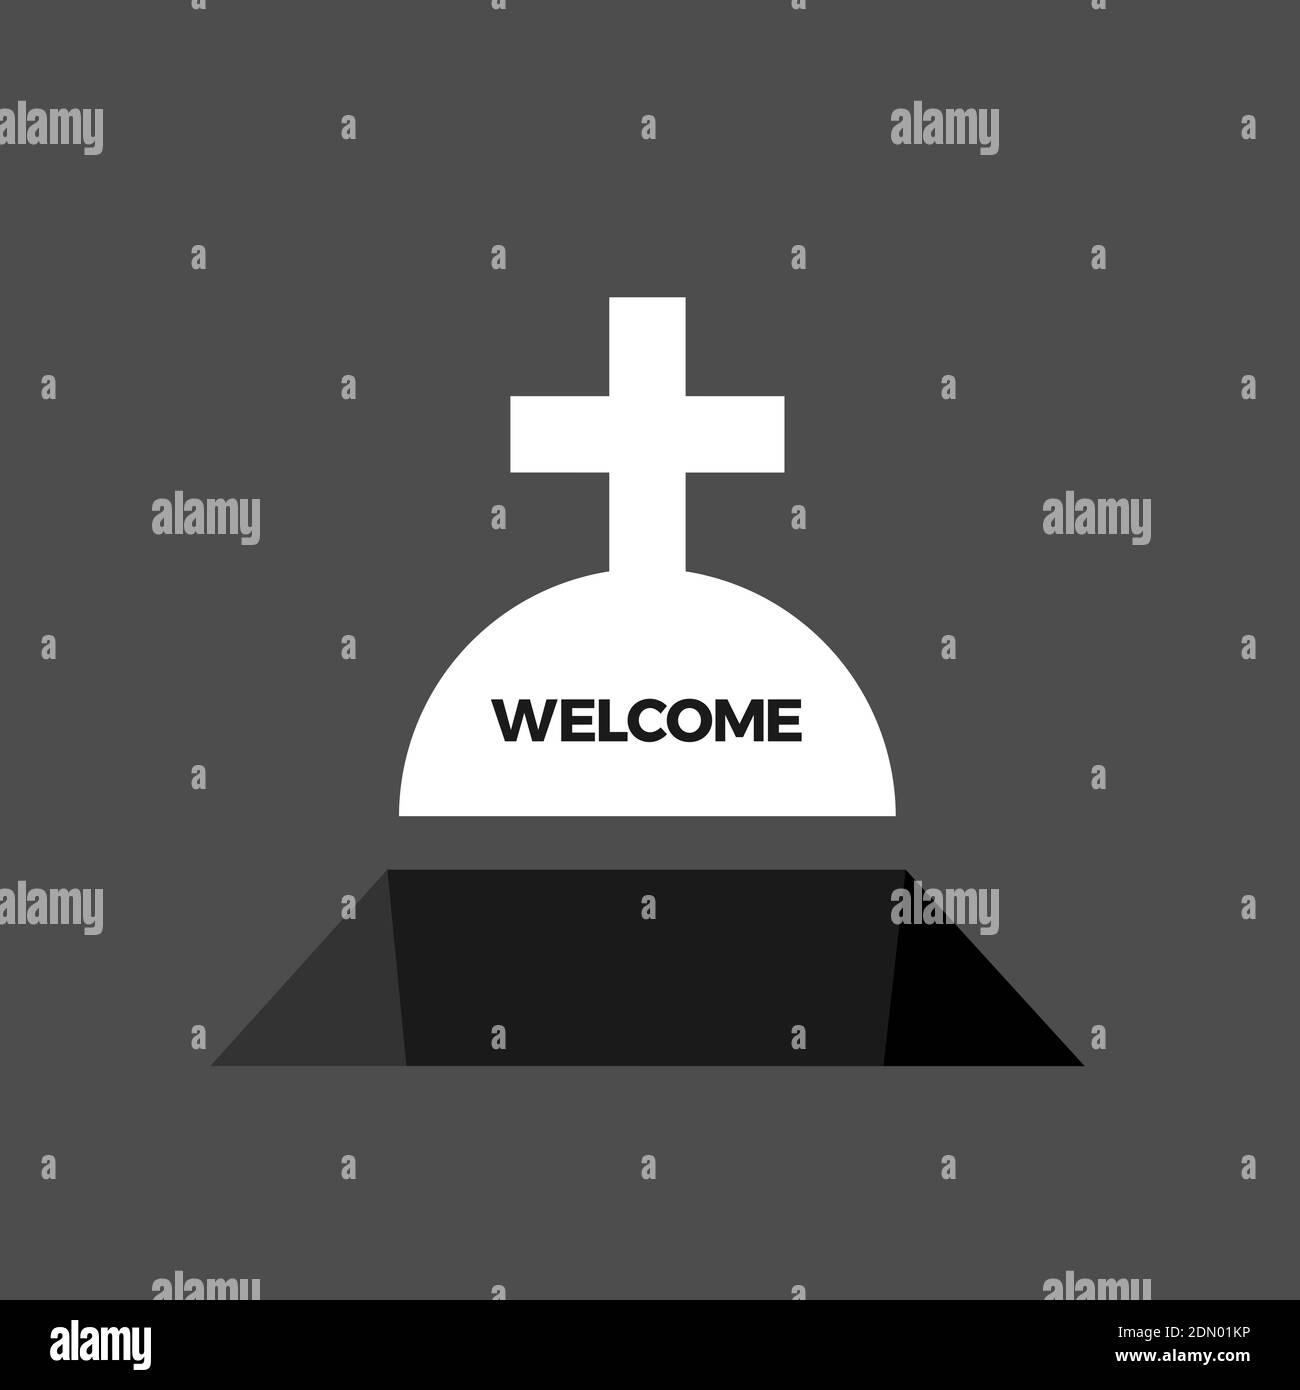 Texte de bienvenue sur la pierre tombale chrétienne - la tombe sur le cimetière est préparée pour le corps mort après la mort. Mortalité et humour noir. Illustration vectorielle Banque D'Images